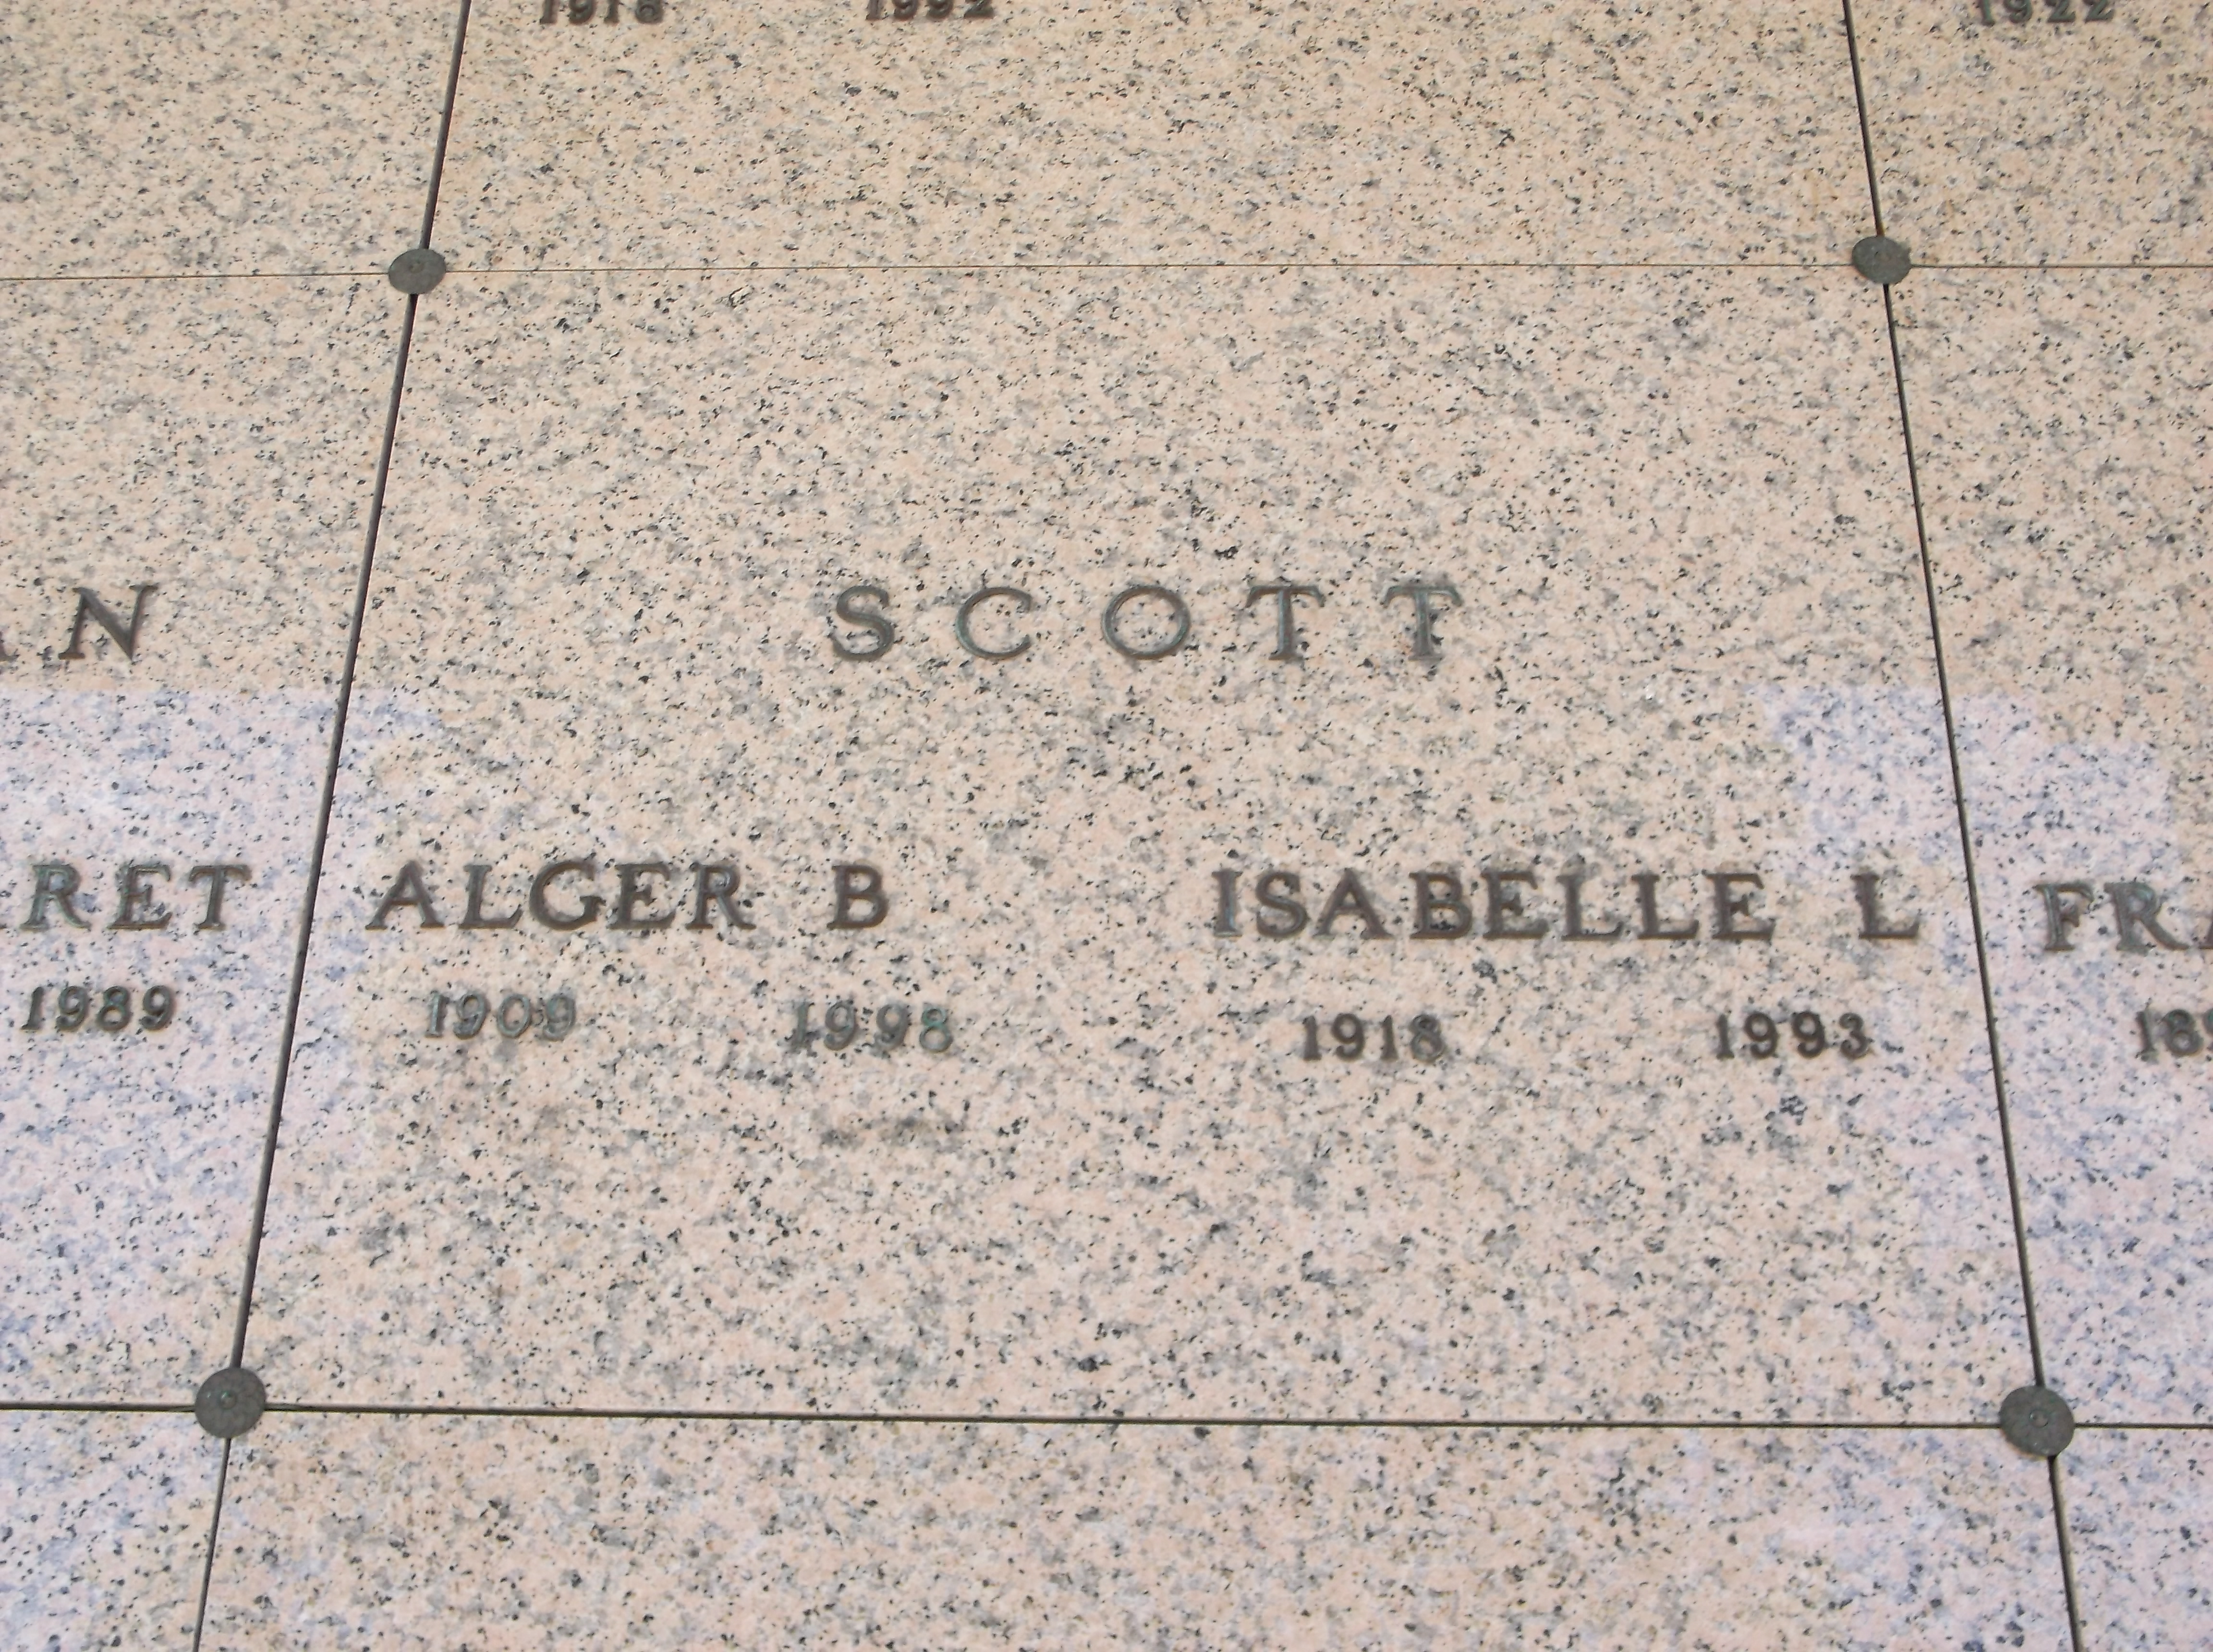 Alger B Scott